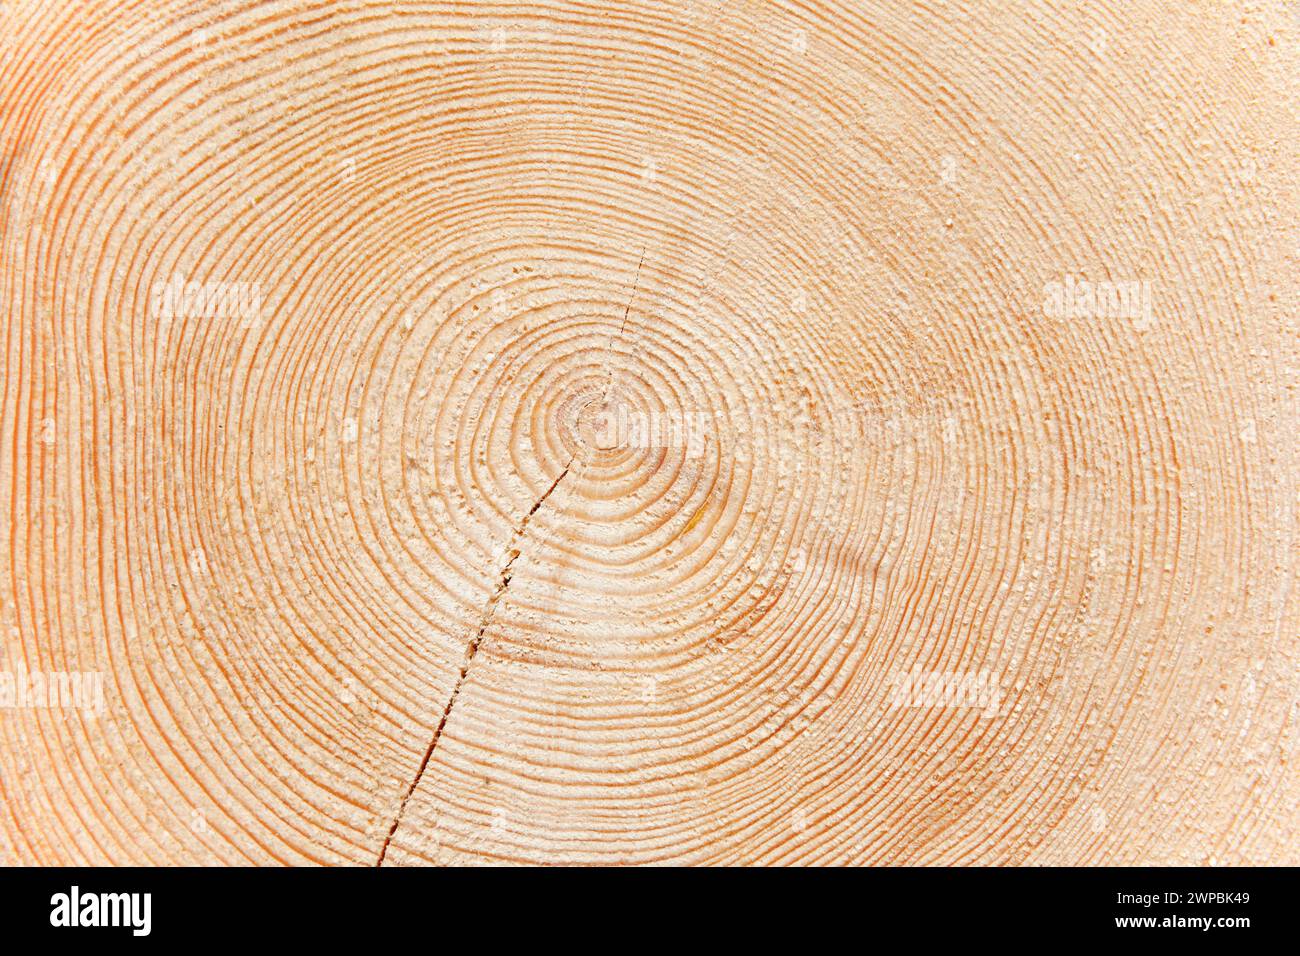 Fichte (Picea abies), frisch gefällter Baumstamm einer großen Fichte Stockfoto